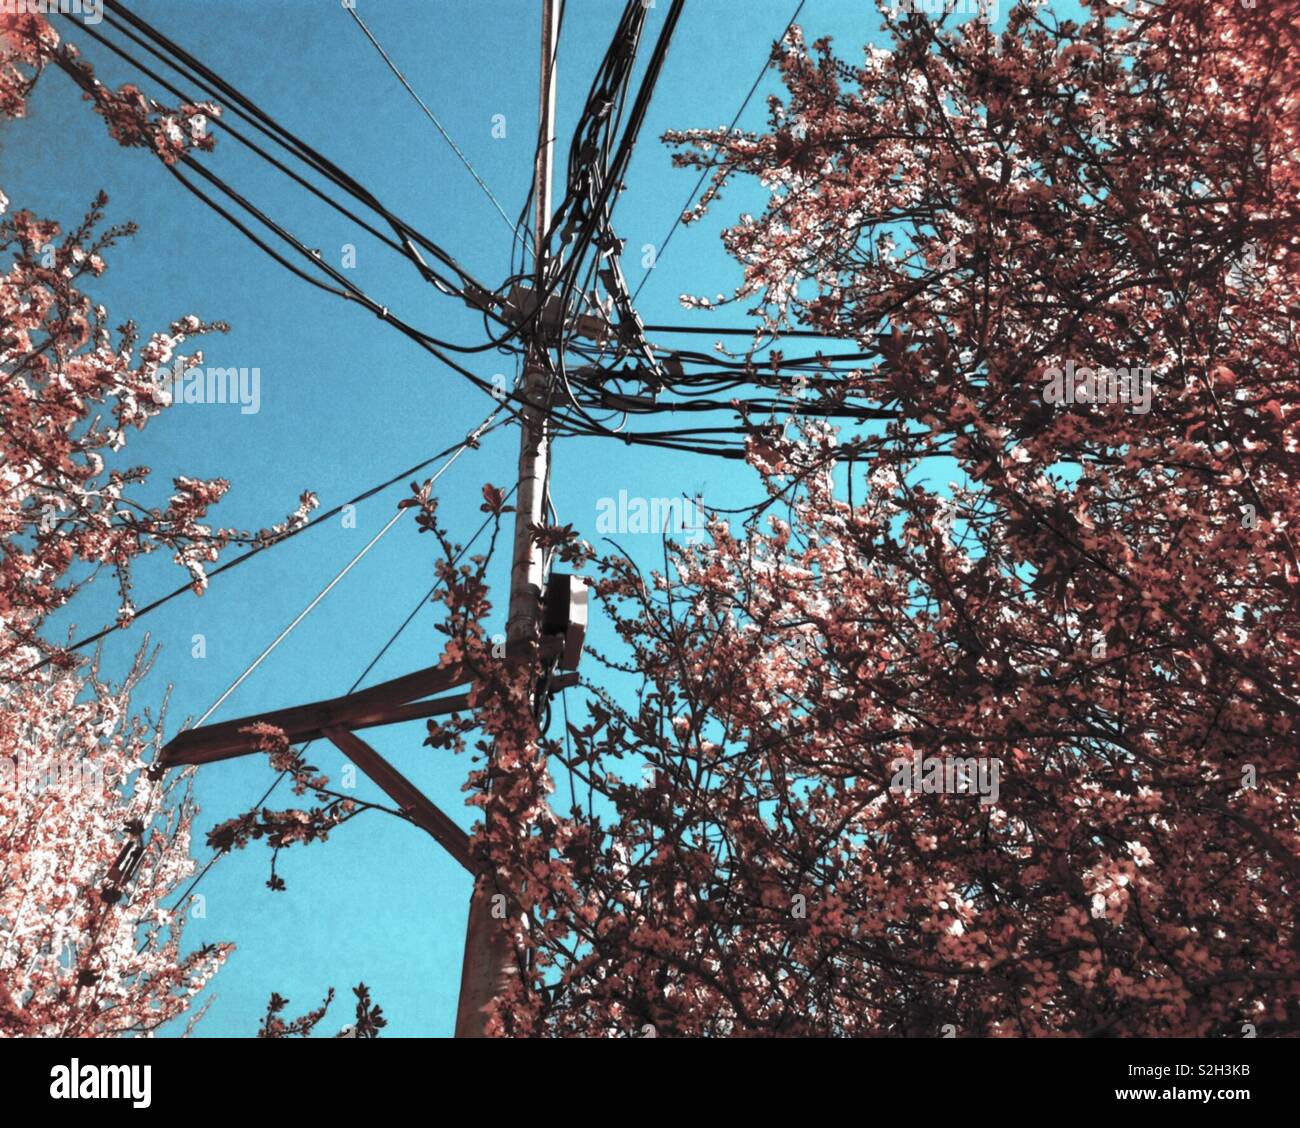 La fotografia del fiore di ciliegio albero e palo elettrico e cavi contro il cielo blu contro Foto Stock